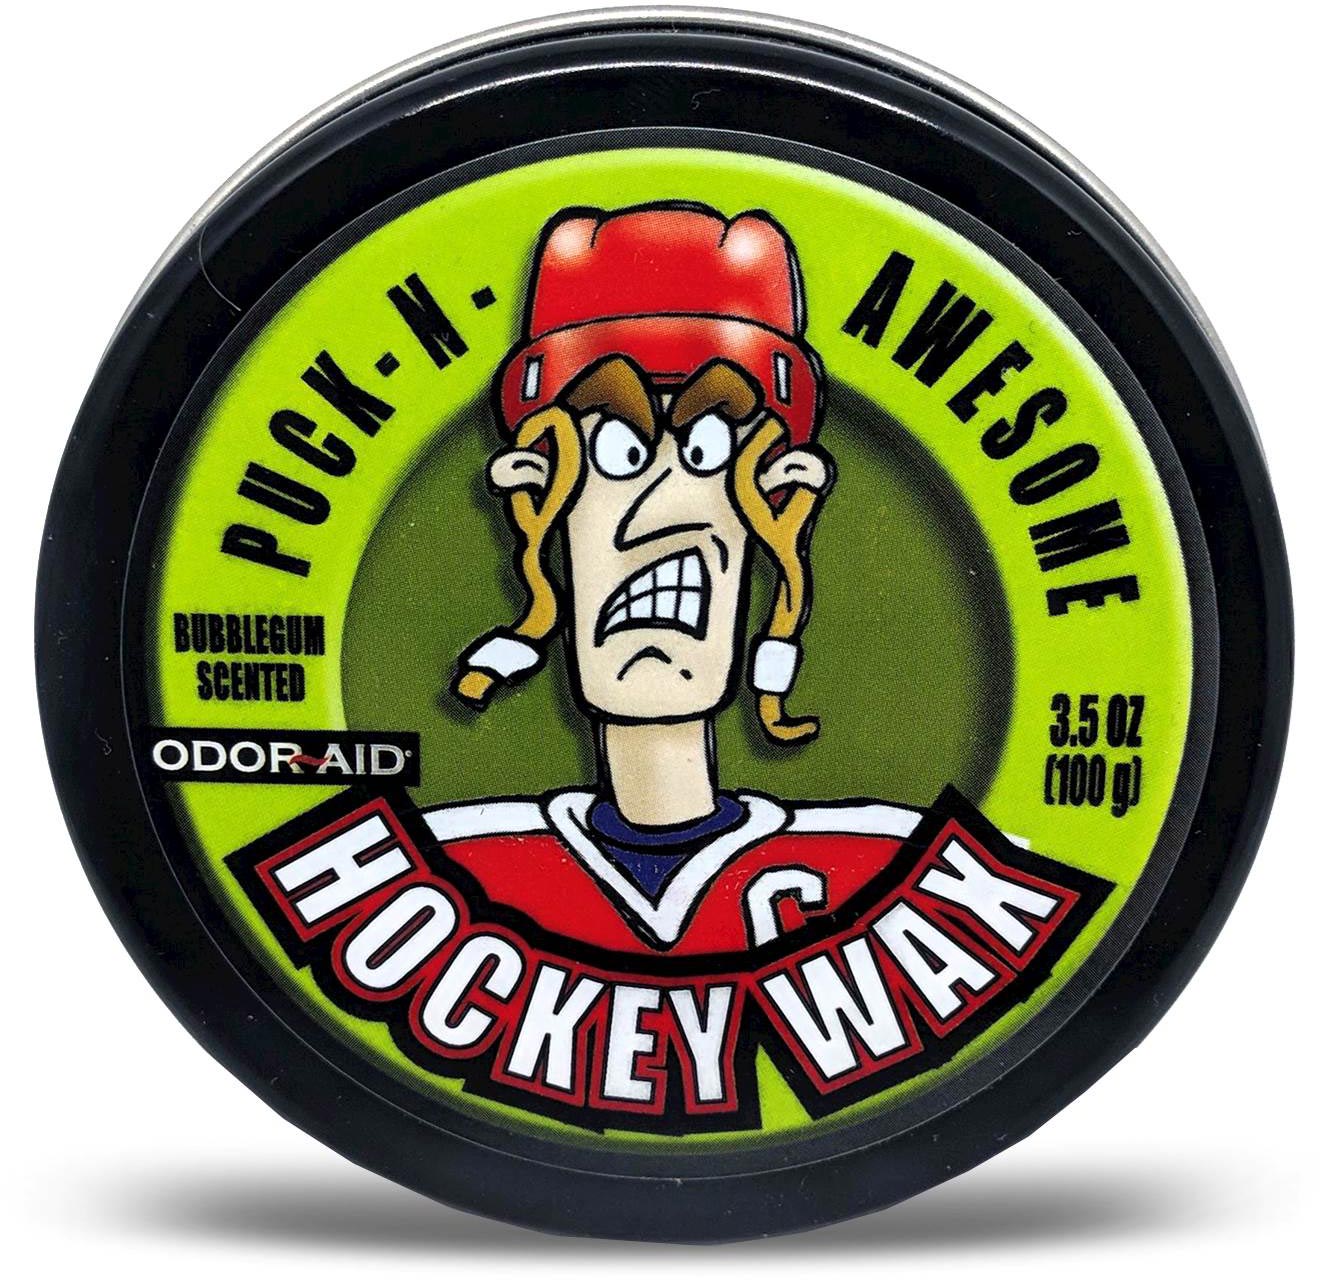 Hockey stick wax